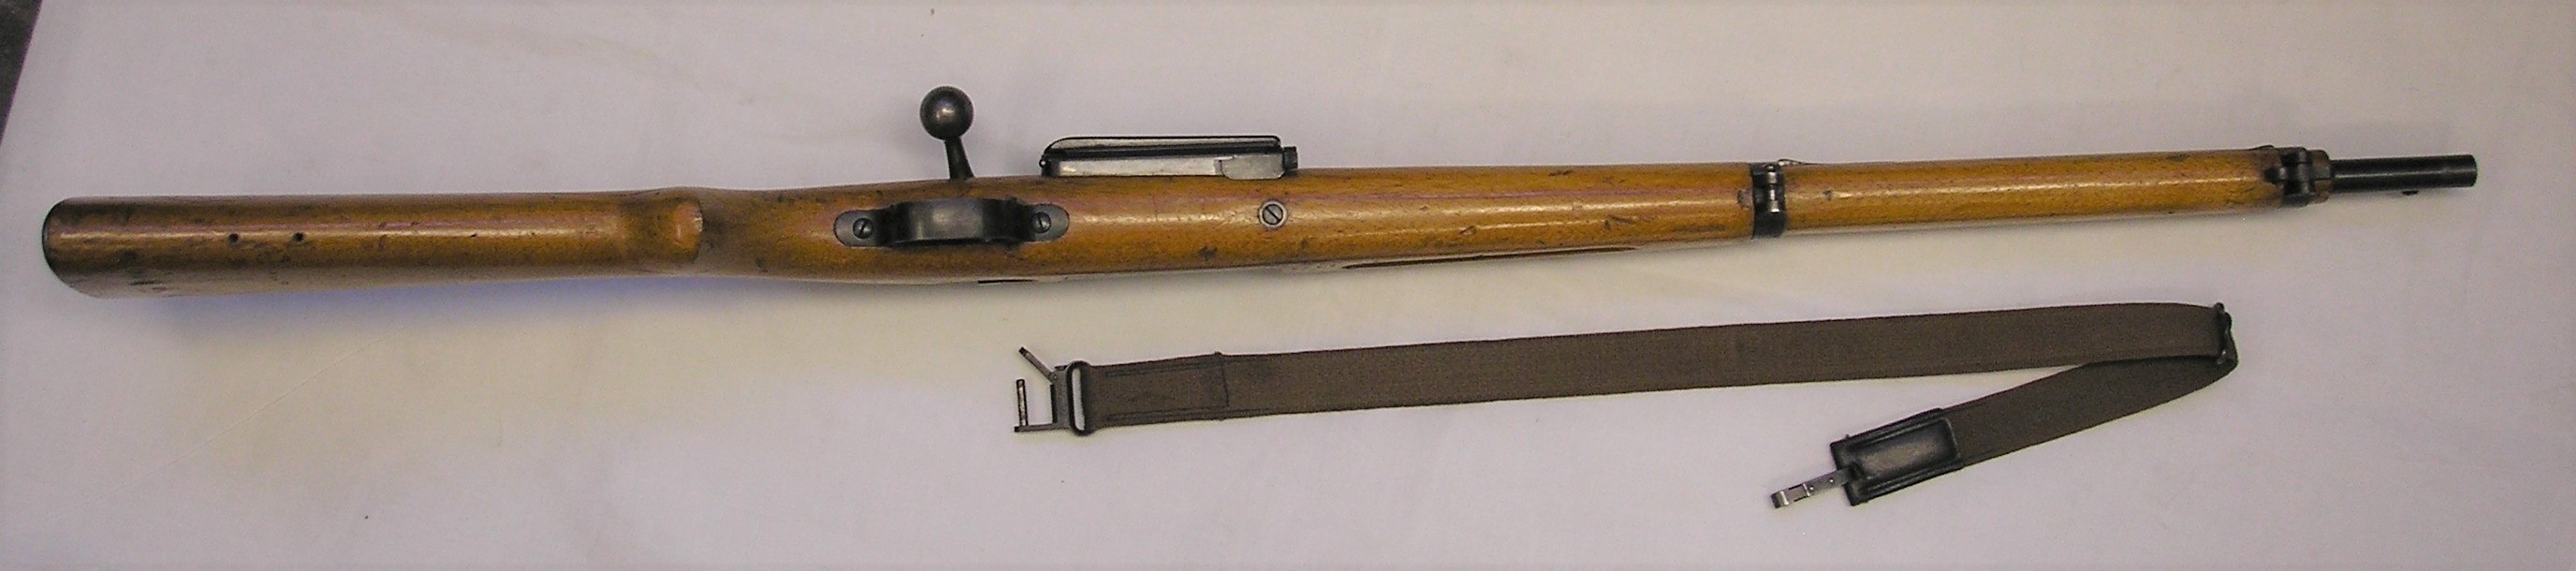 ./guns/rifle/bilder/Rifle-Kongsberg-Krag-M1904-9443-10.JPG